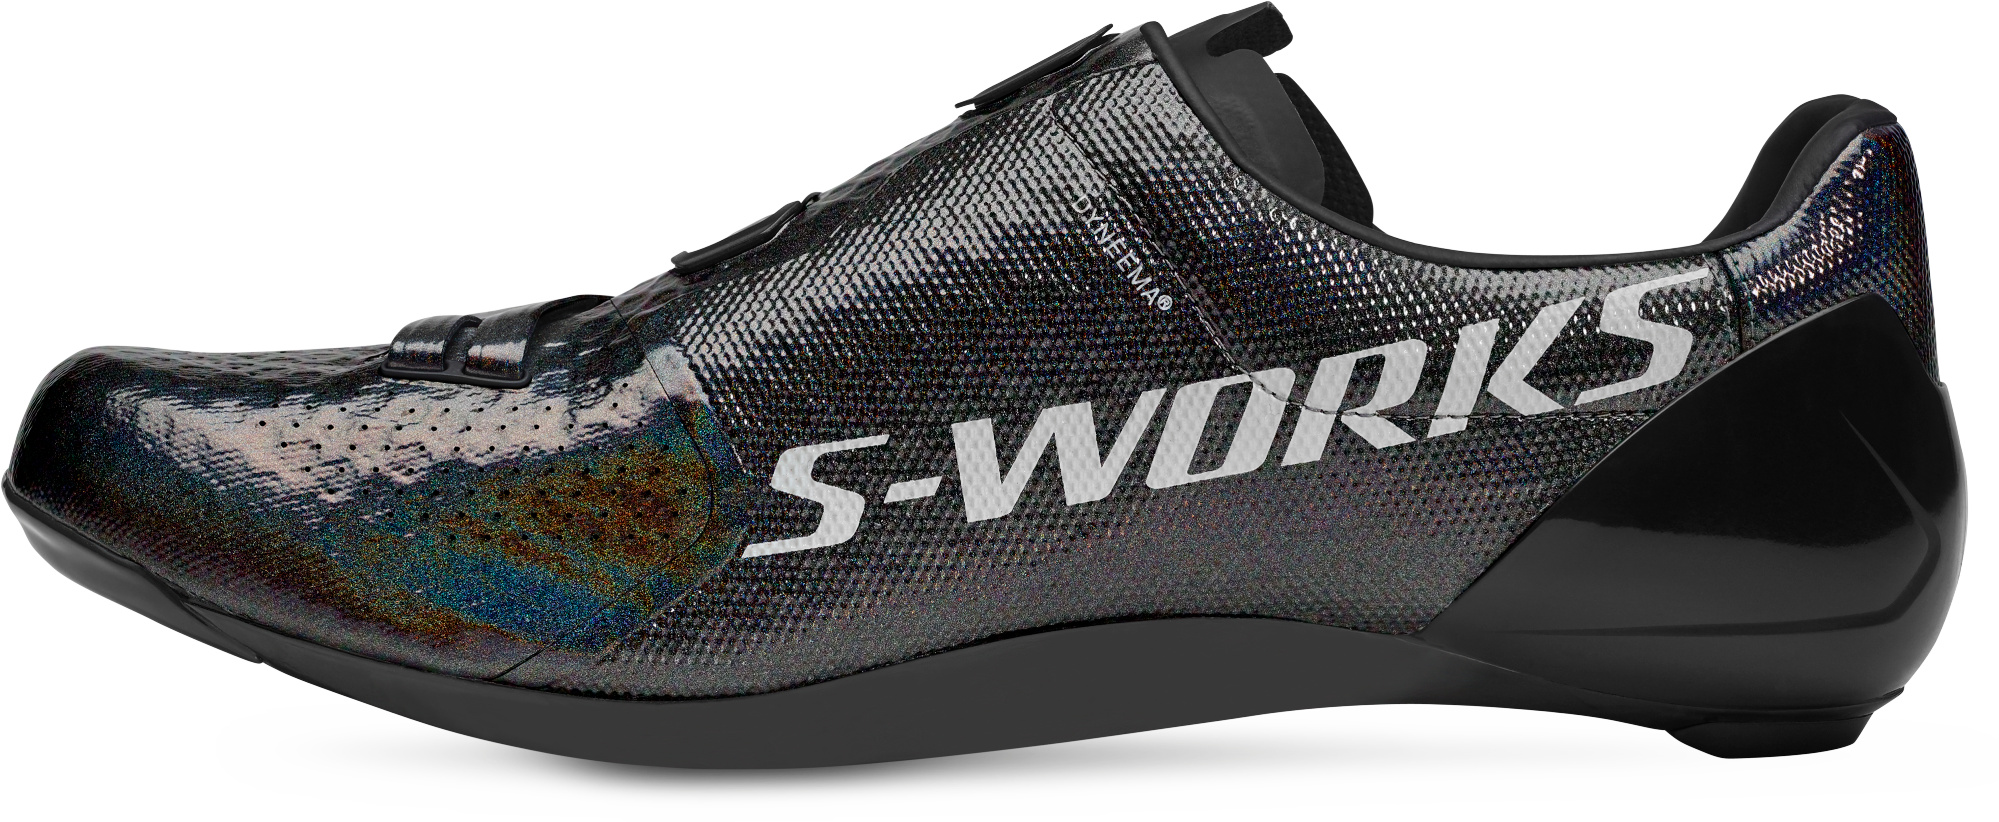 s works sagan shoes